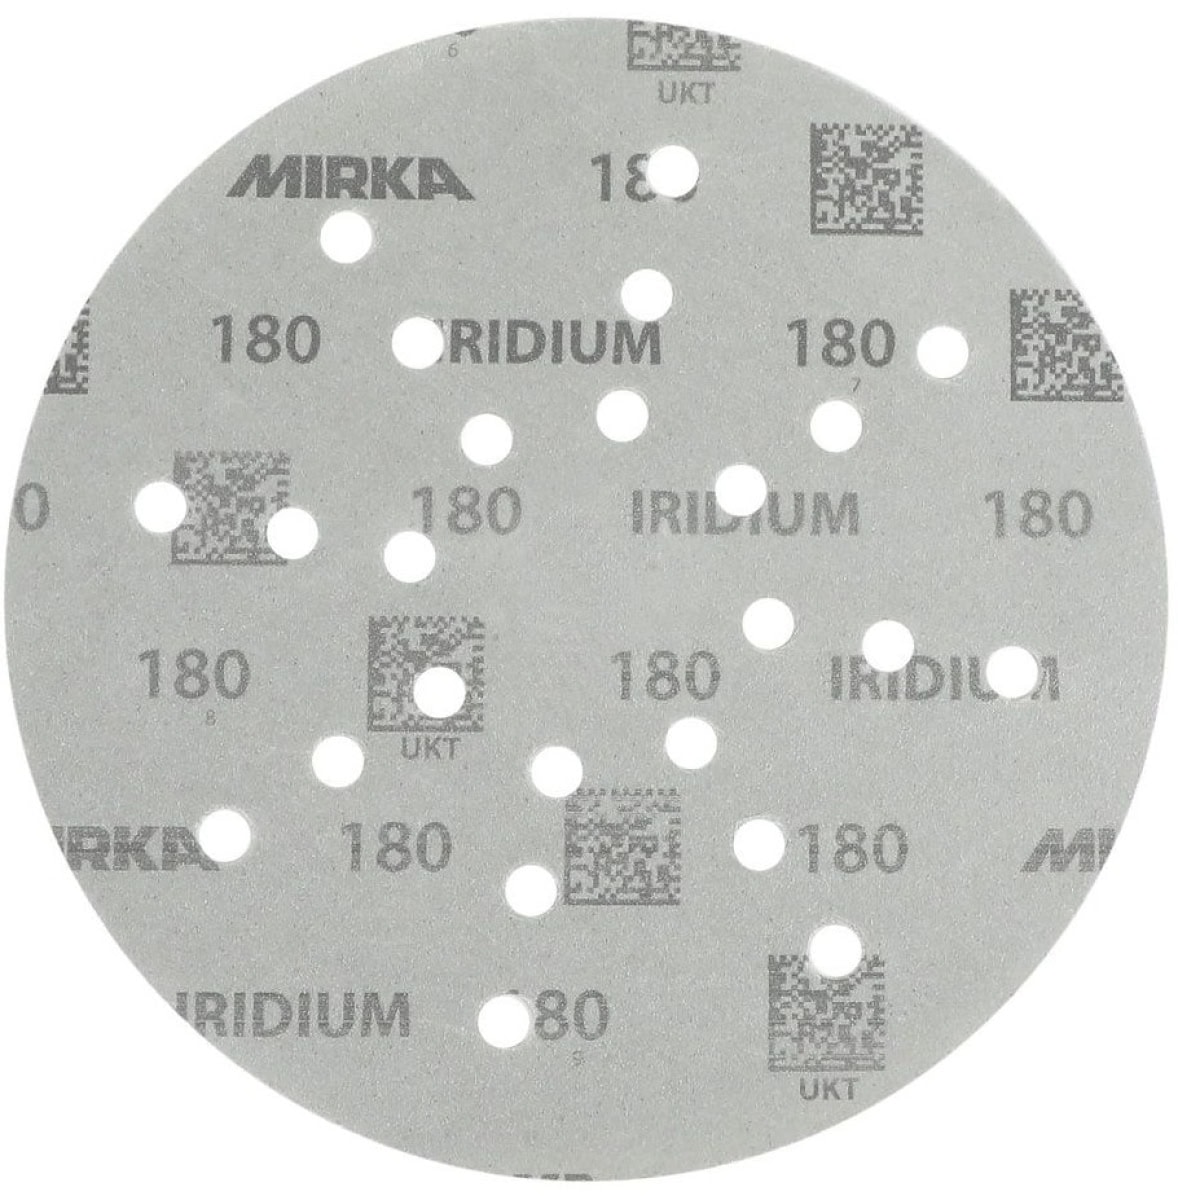 Mirka® Iridium® 2468002532, Ø 225 mm, P320, Multilochung, Kletthaftend, Schleifscheibe mit Keramik- und Aluminiumkorn